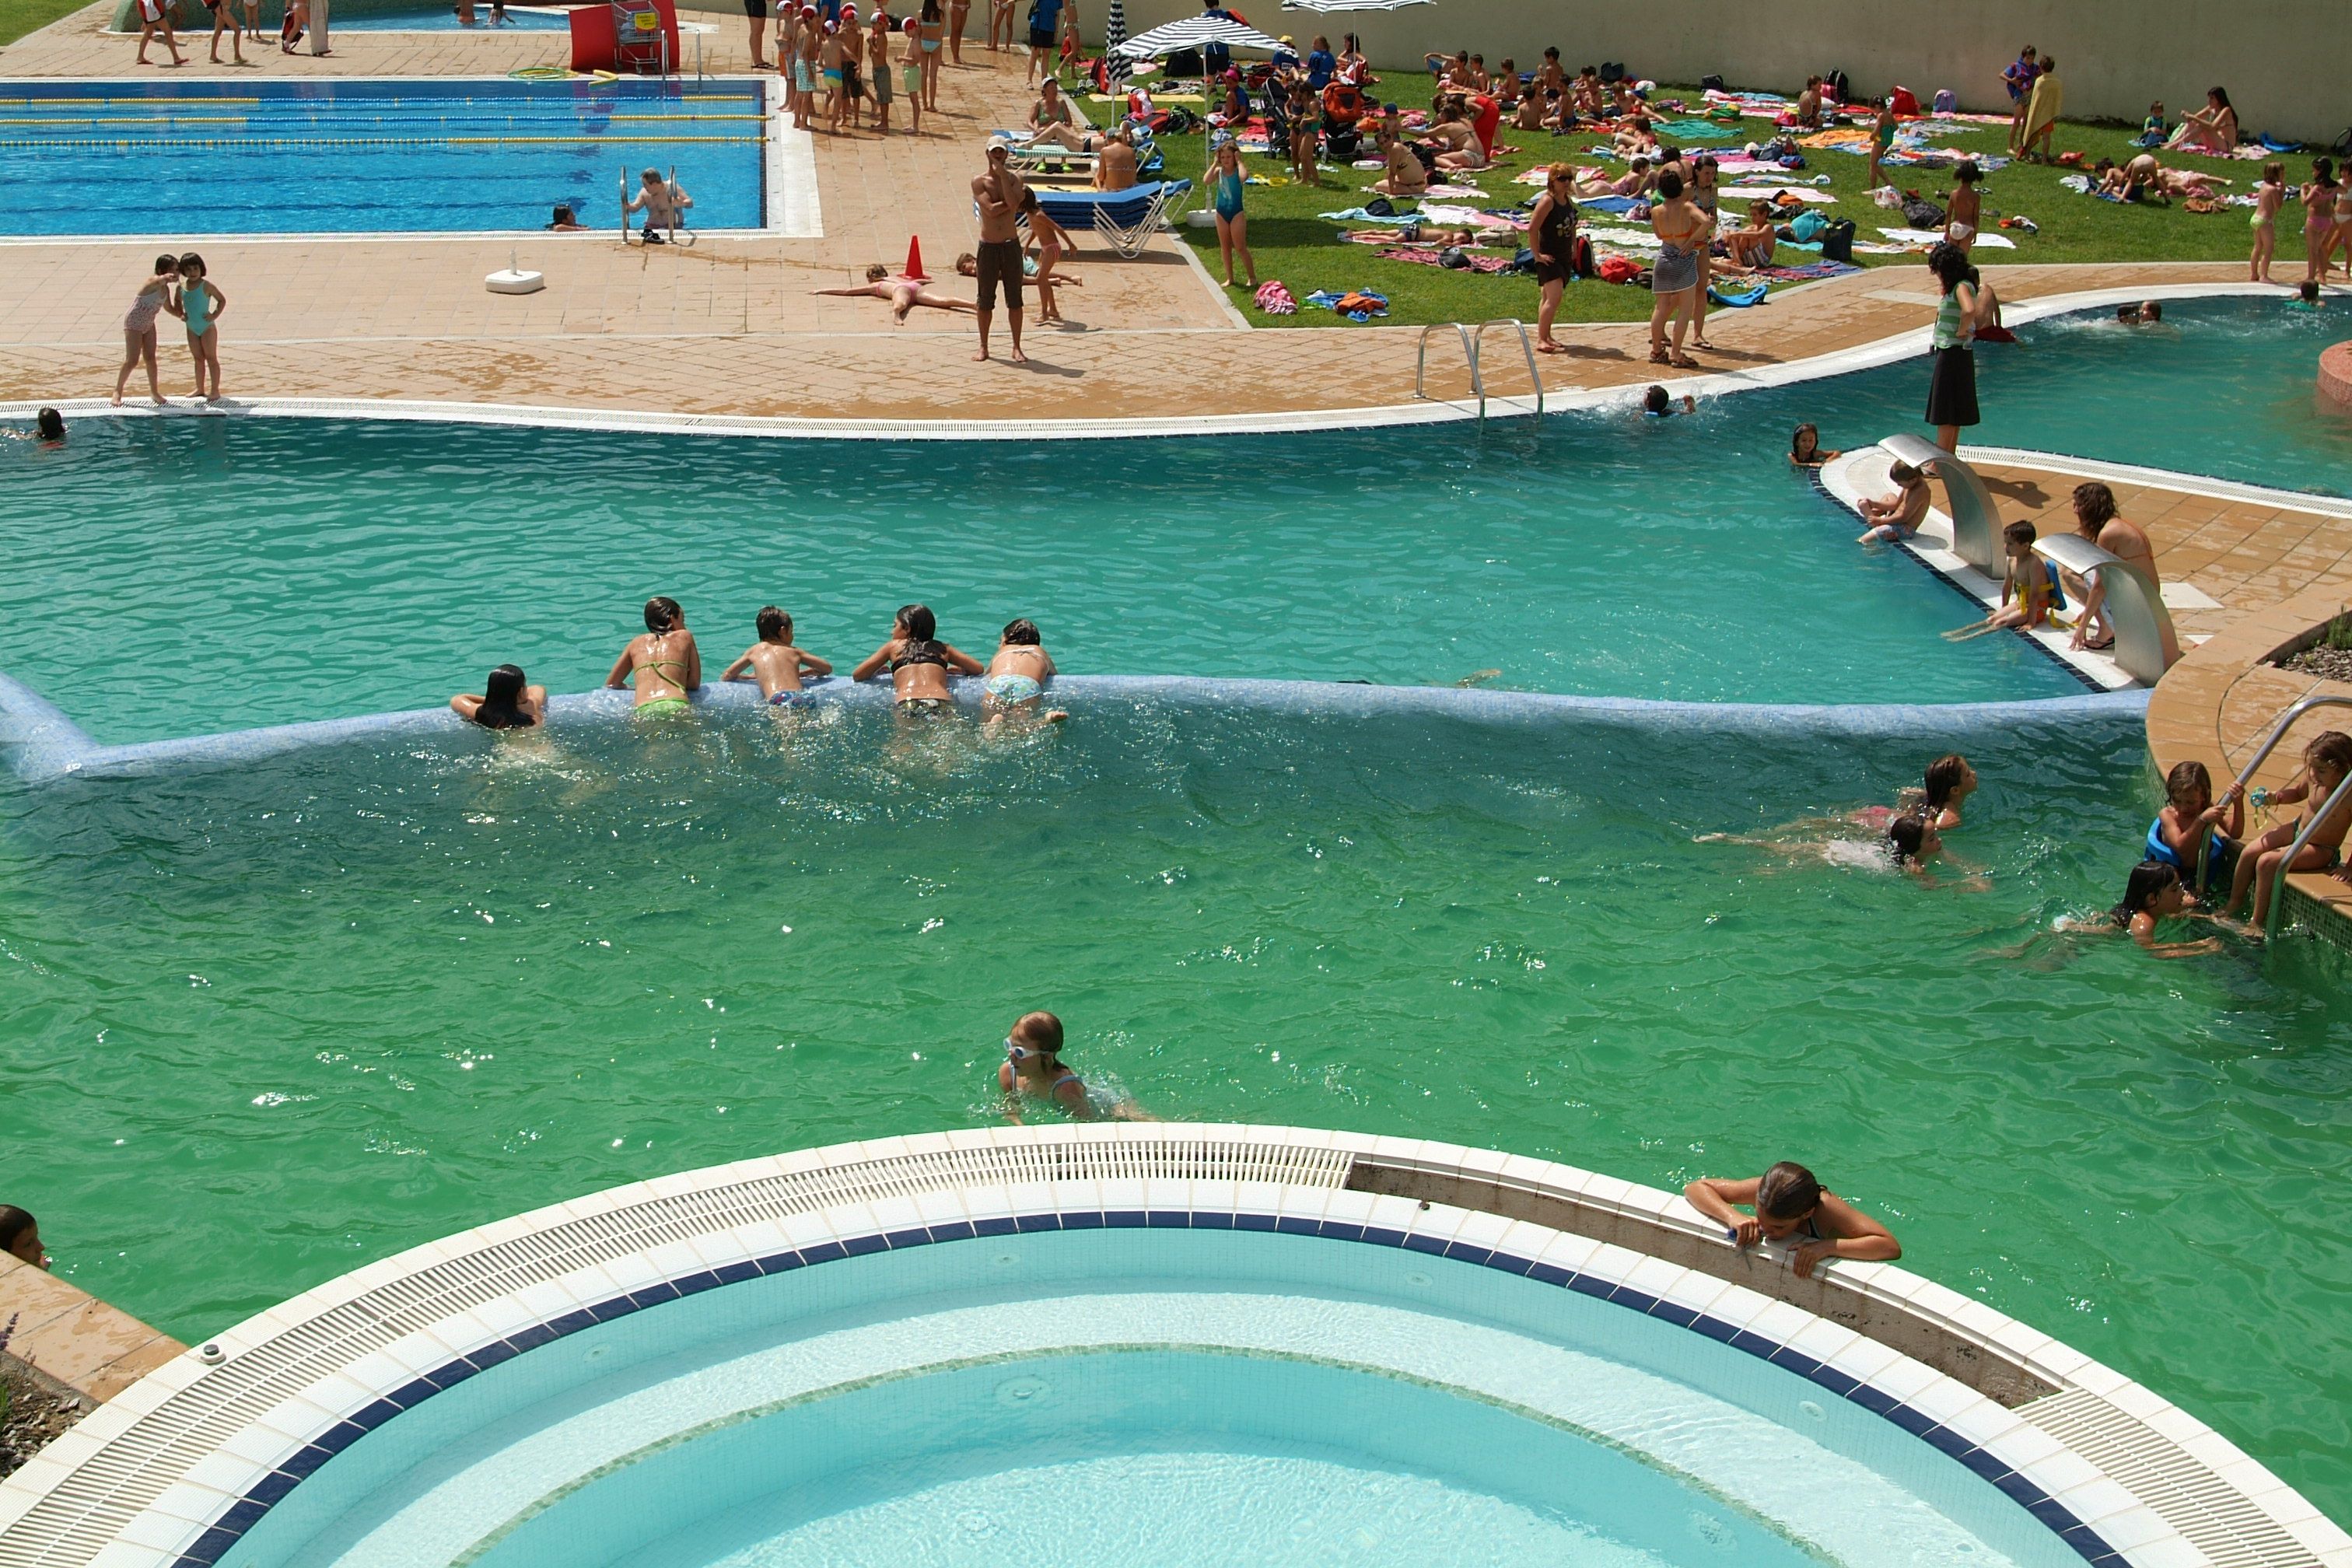 Refrescar-se a les piscines és una bona opció. FOTO: Aïda Sotelo